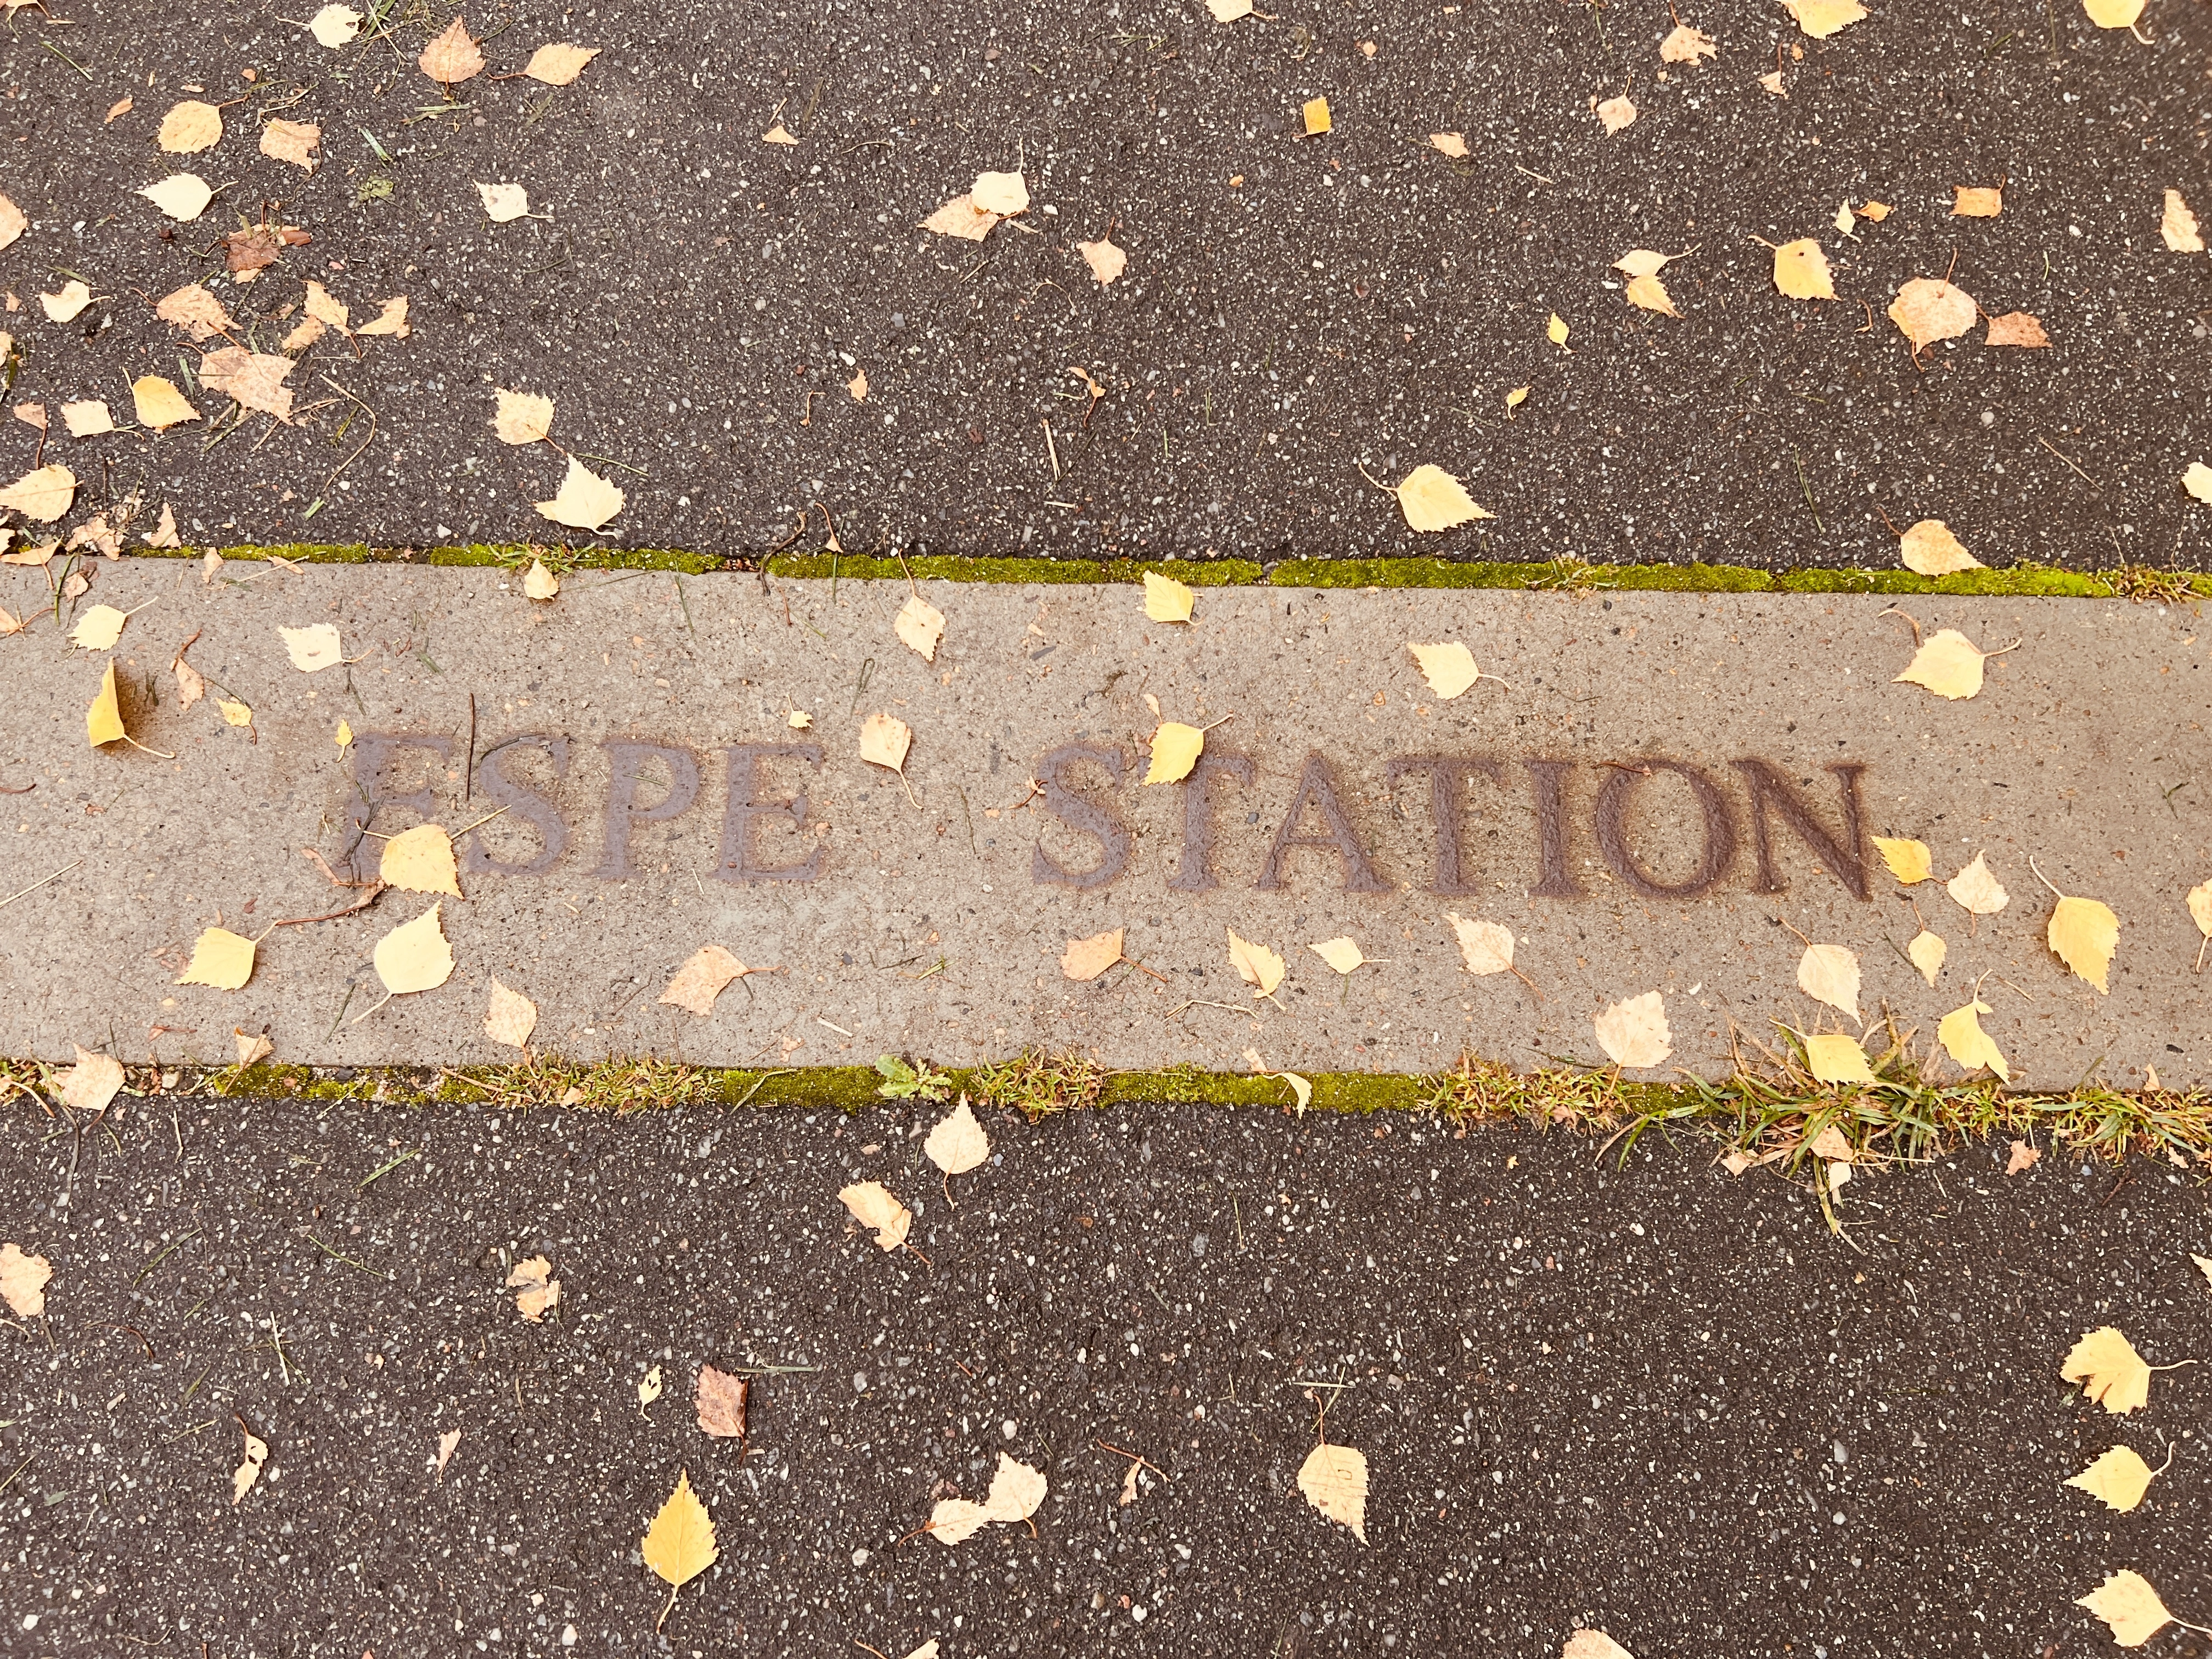 Billede af Espe Stations sporareal.